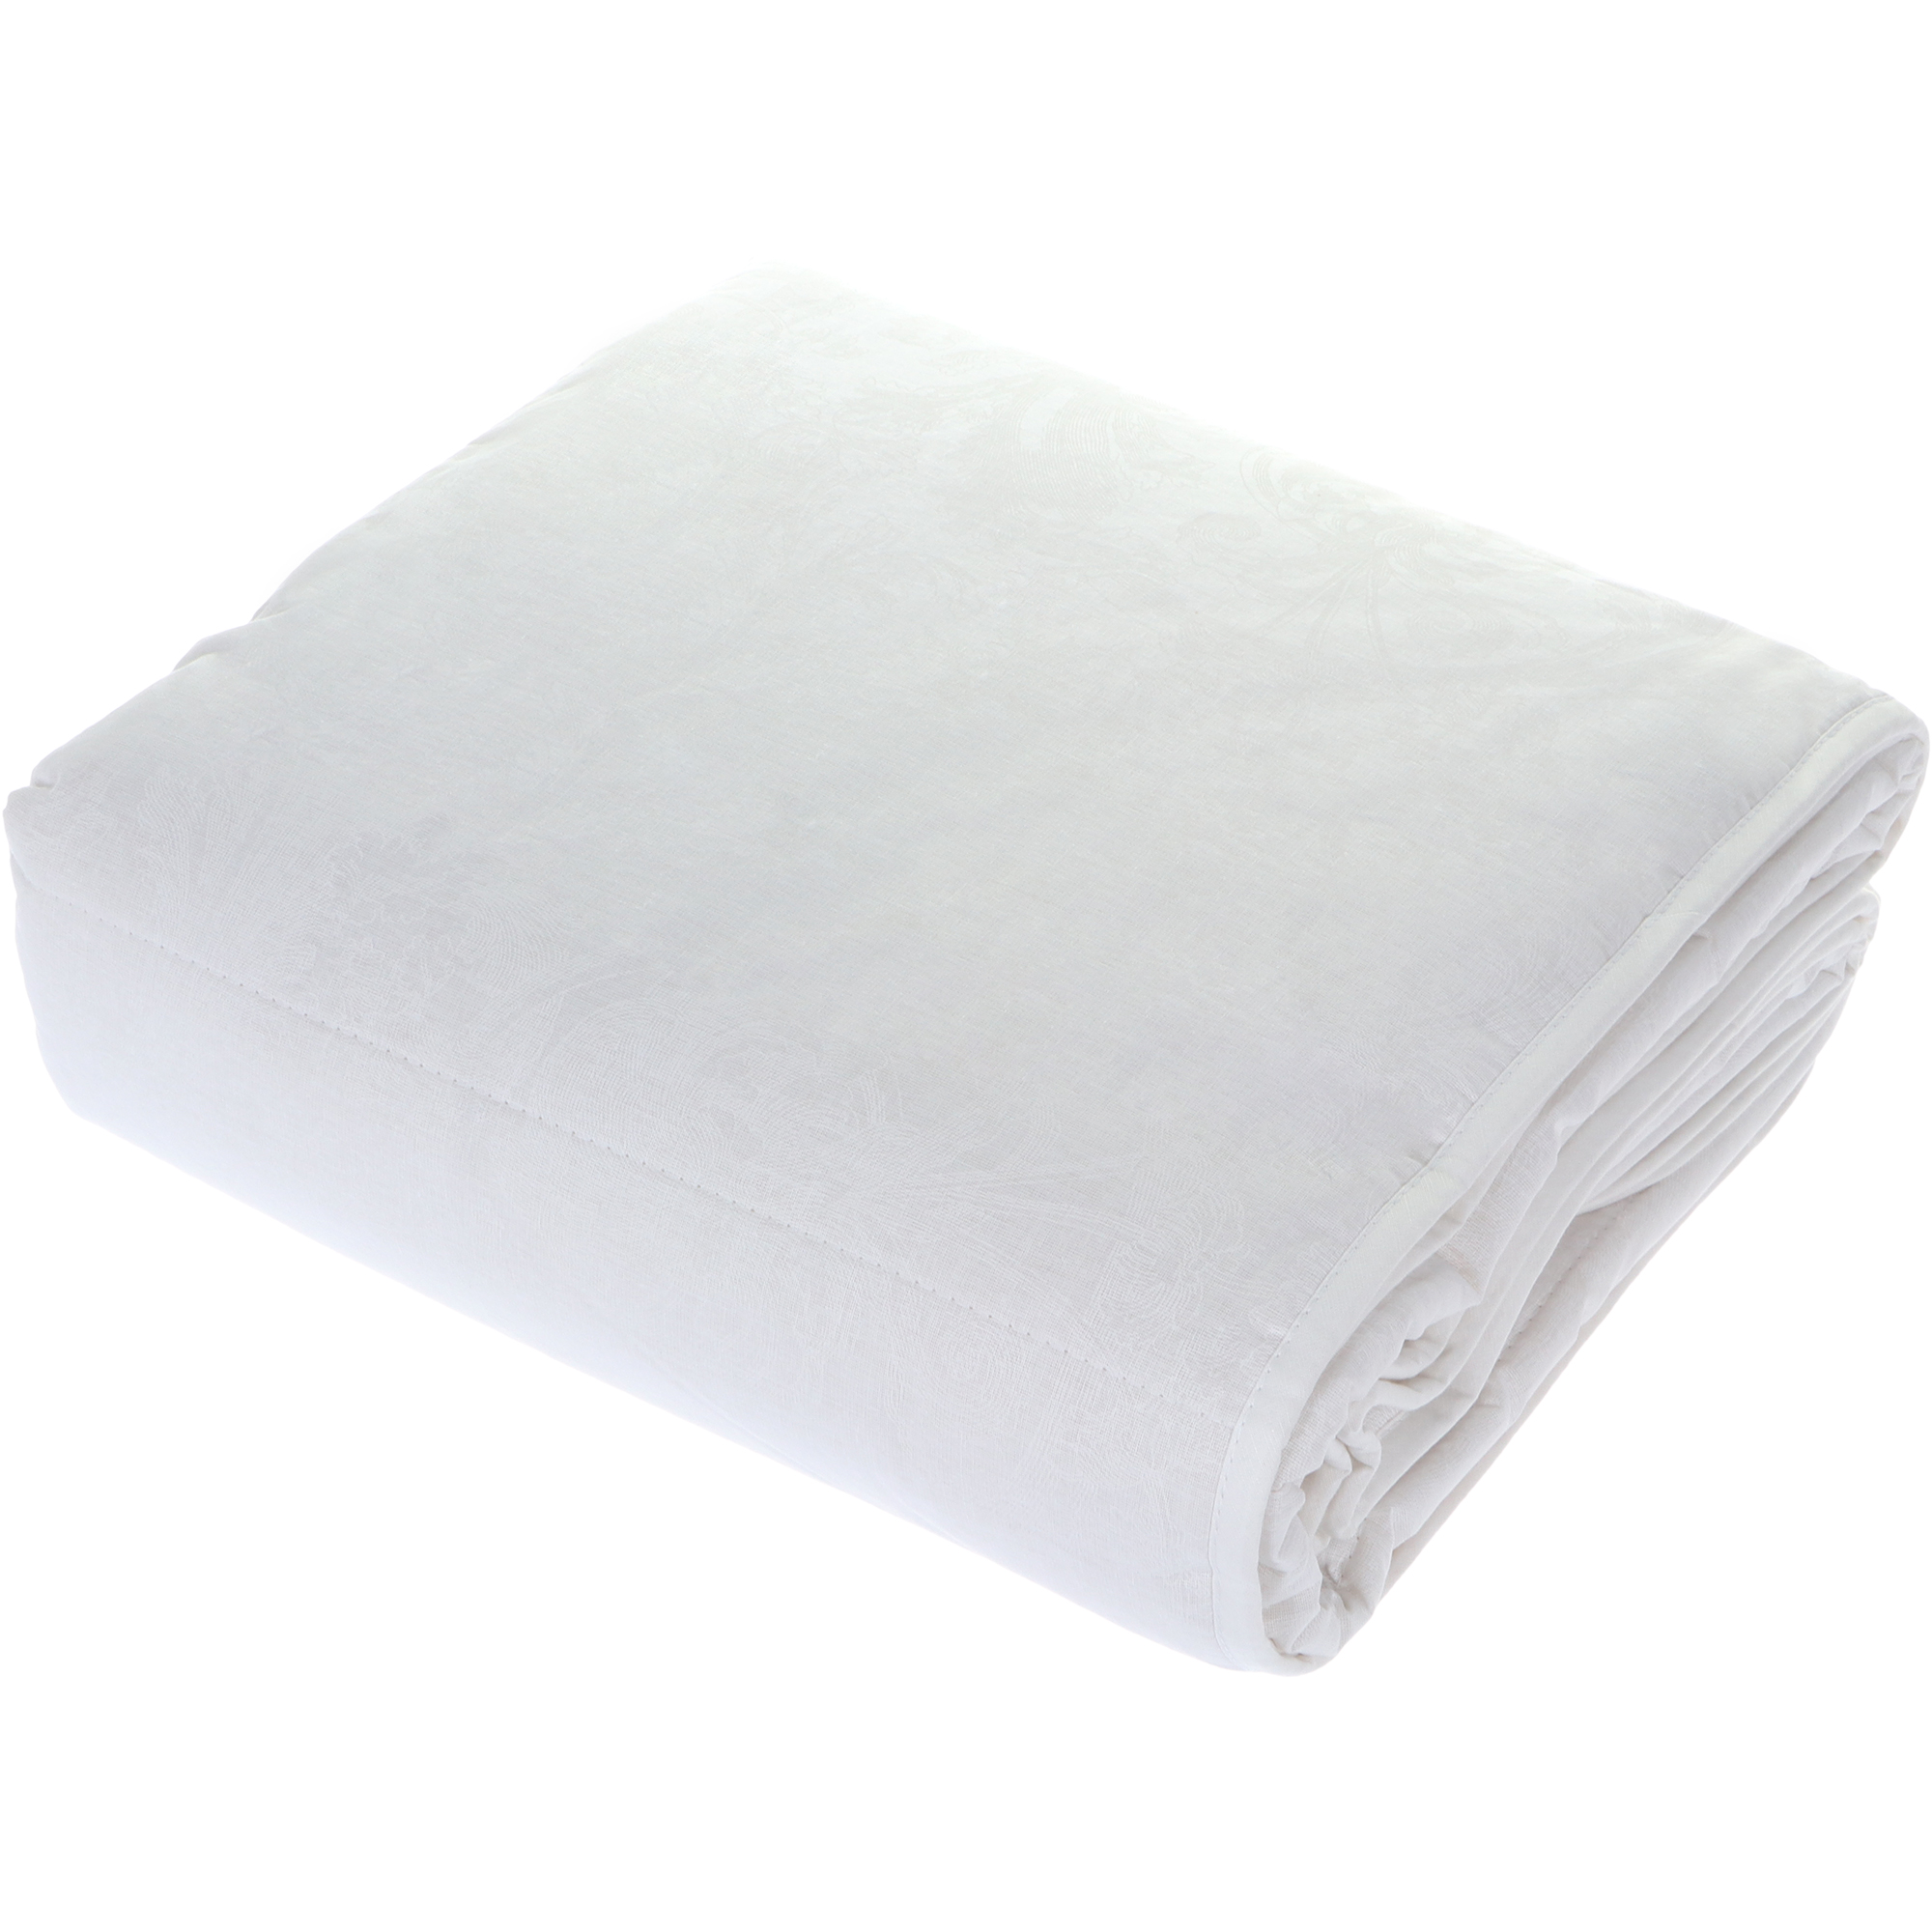 Одеяло Medsleep Skylor белое 175х200 см, цвет белый - фото 6